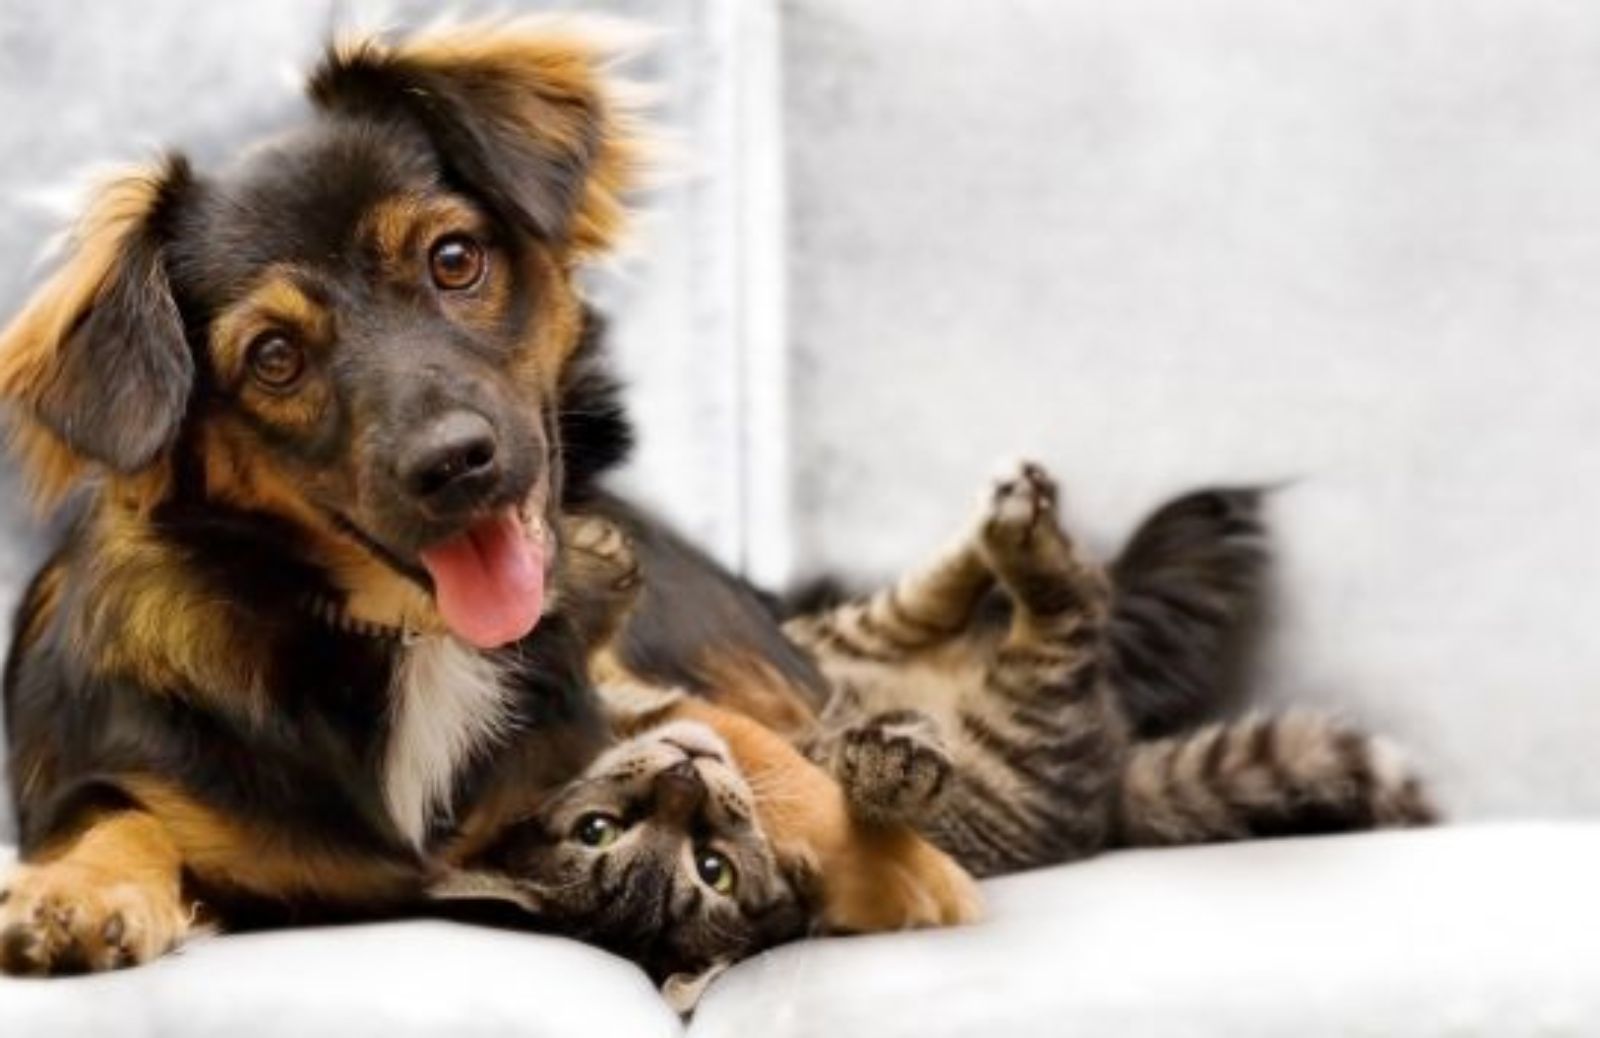 Come dare e ricevere ospitalità gratuita per gli animali: il PetSharing